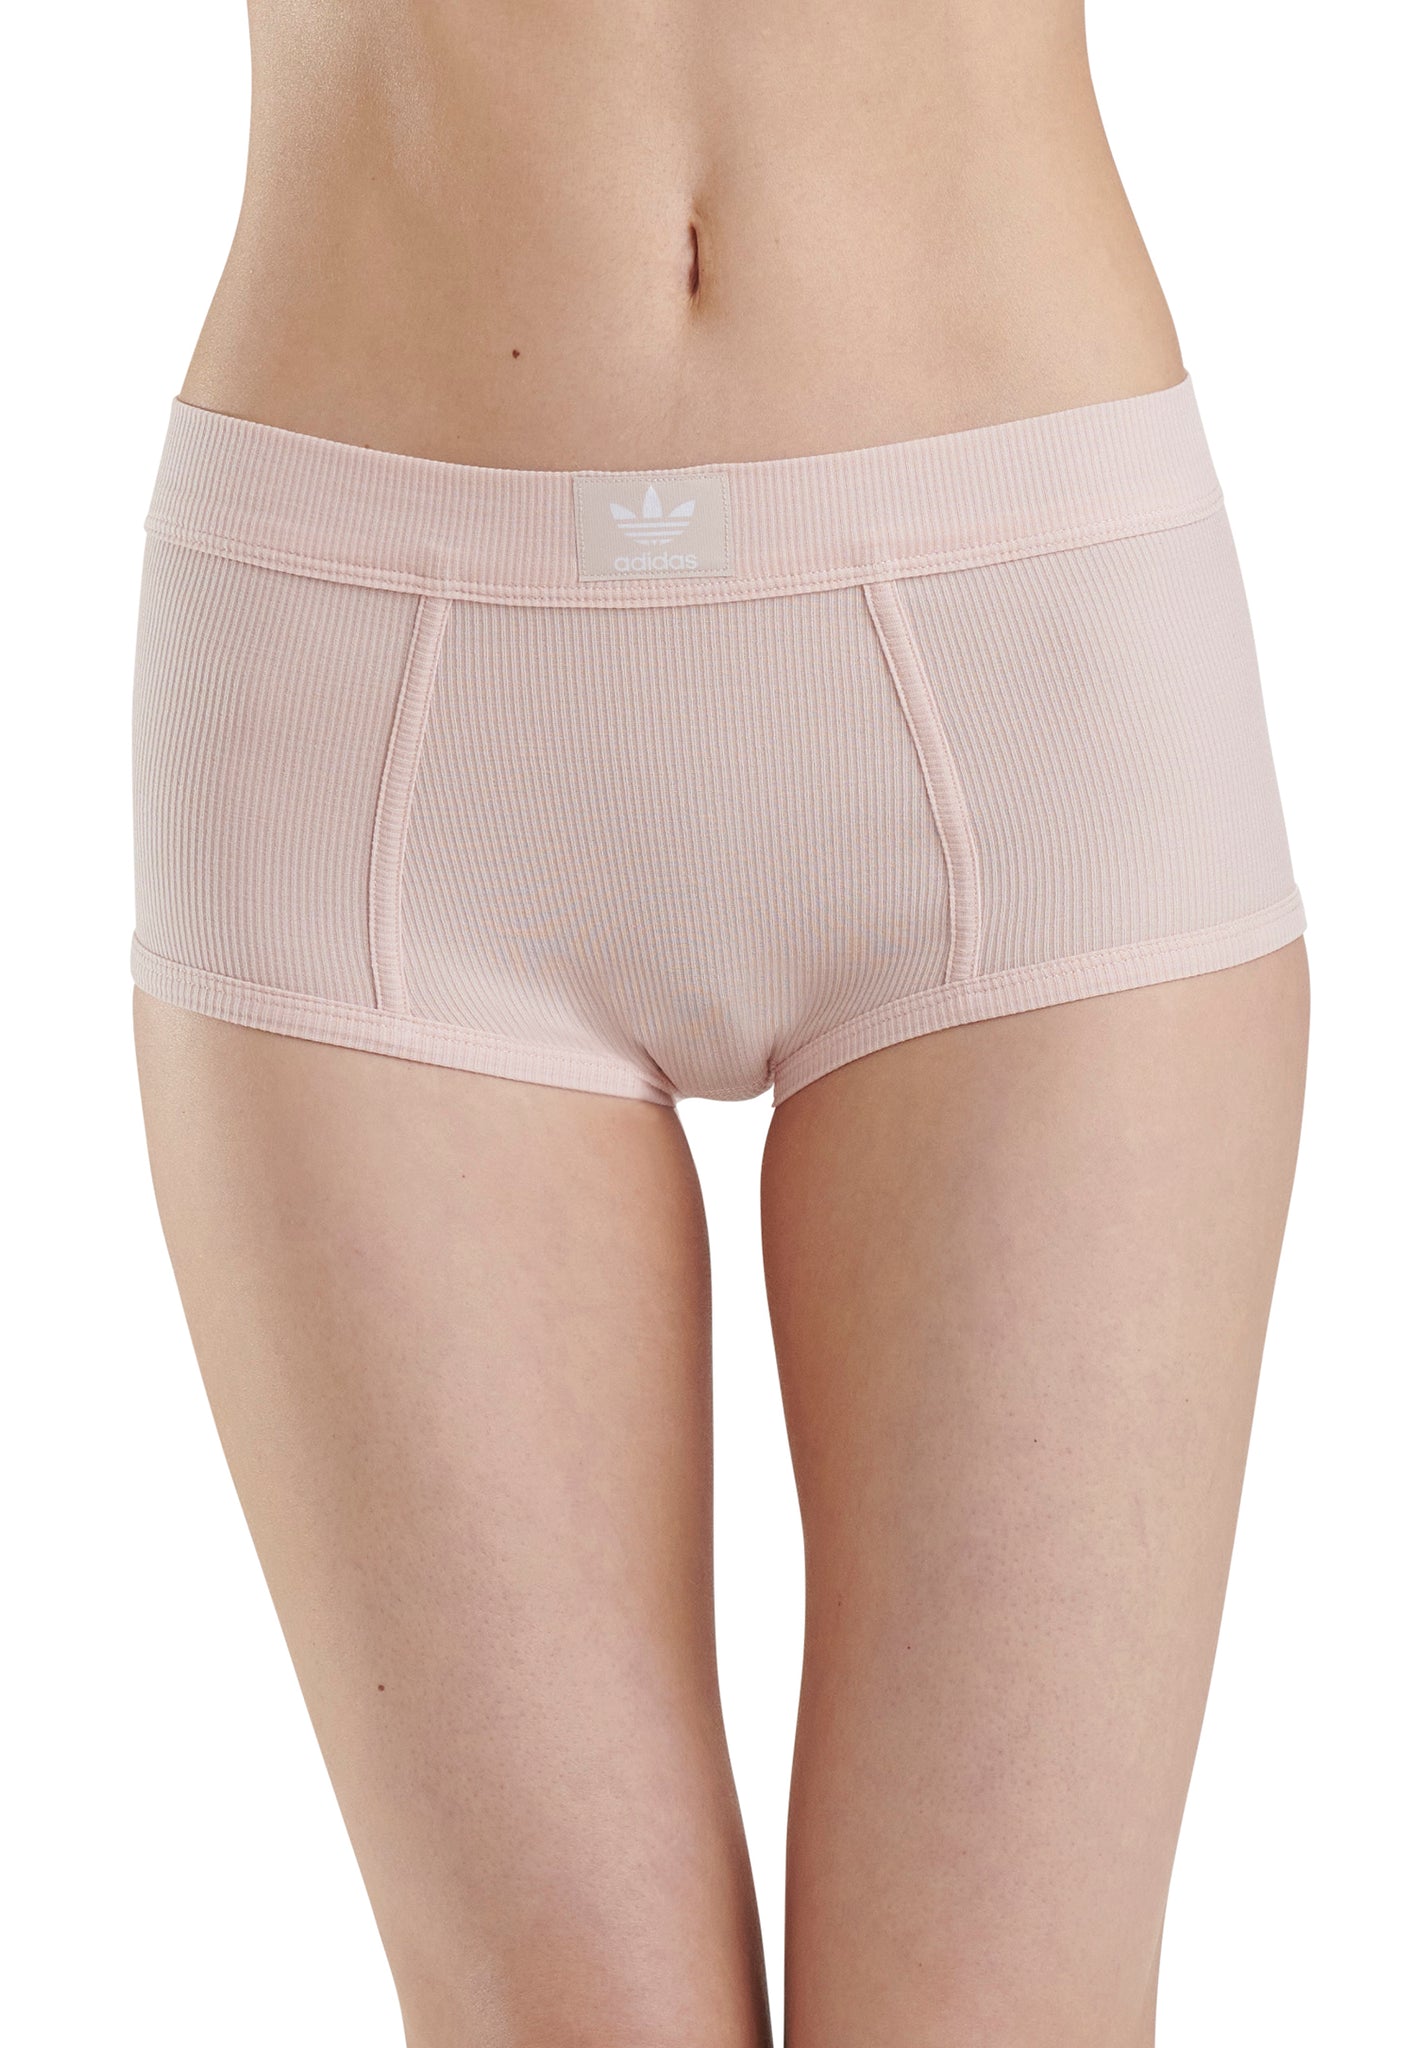 adidas Modern Flex Strappy Bralette Underwear - Pink